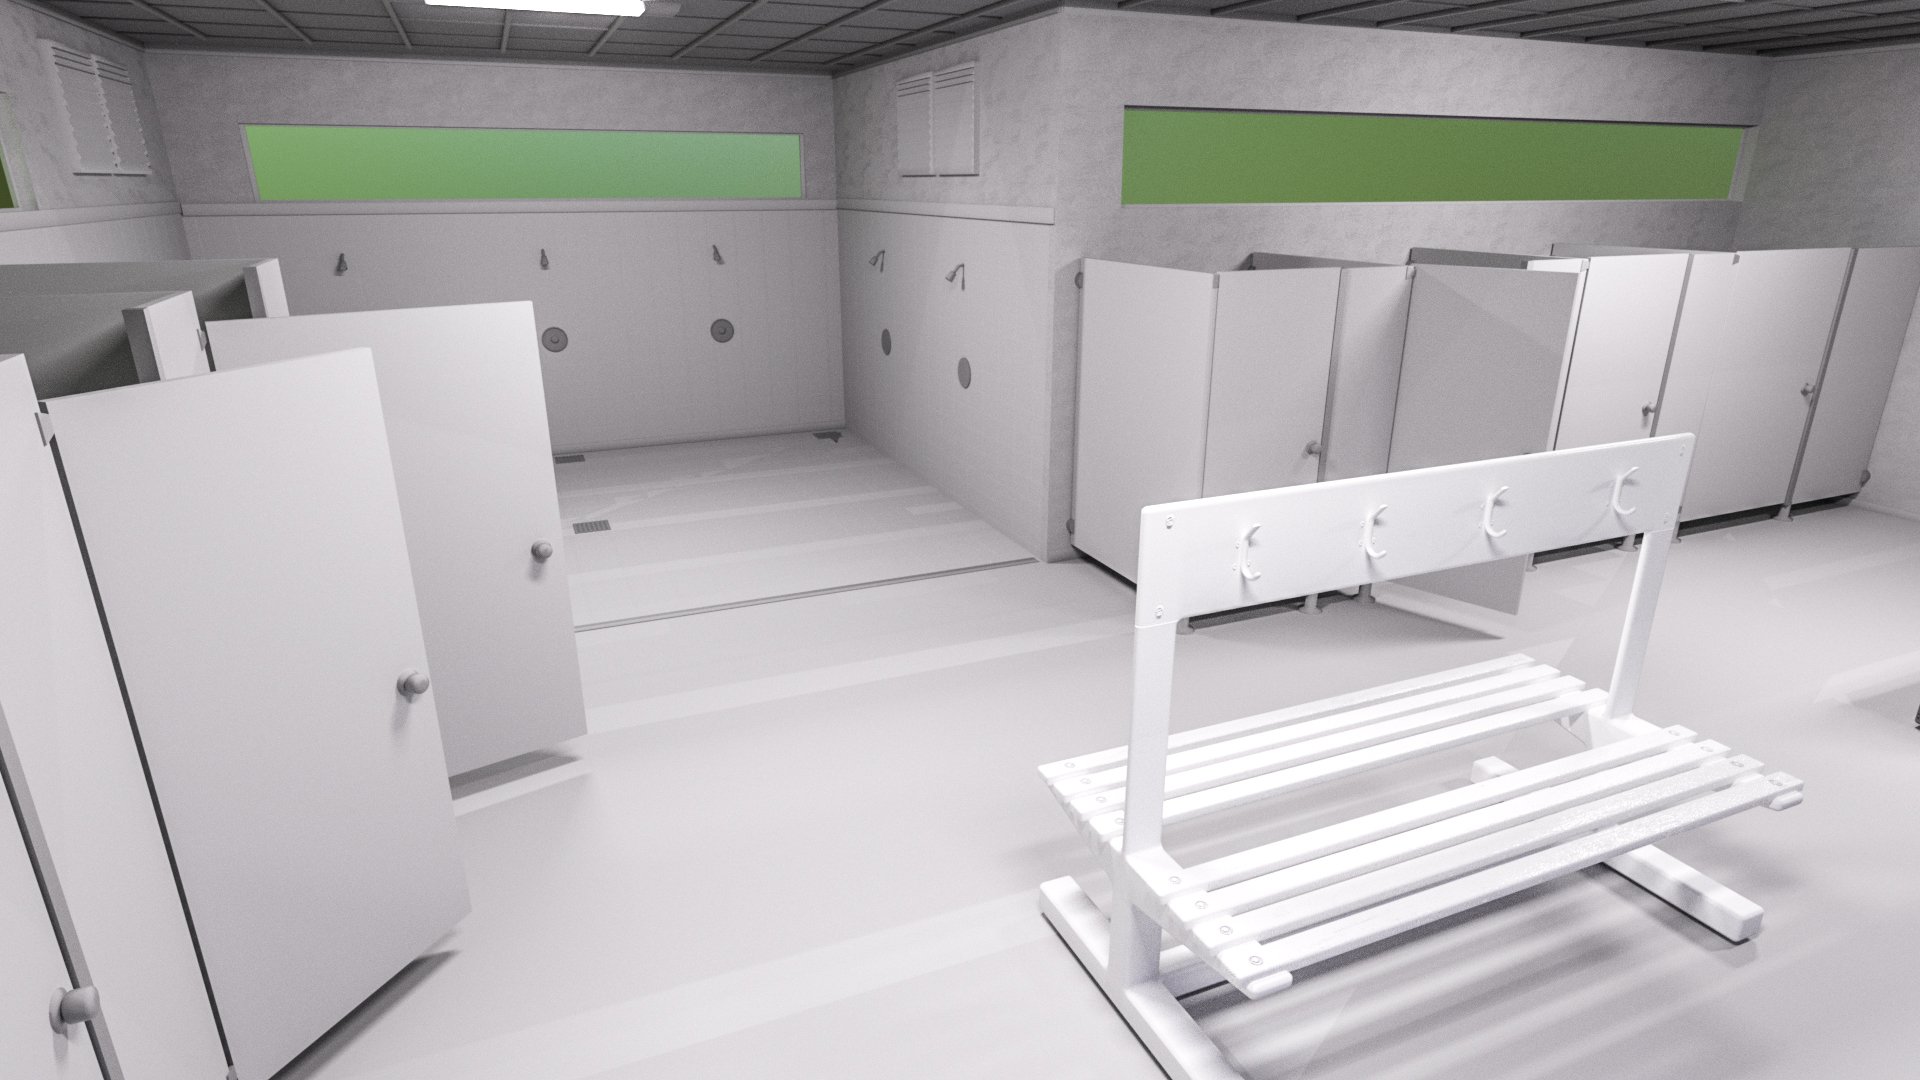 Locker Room by: Serum, 3D Models by Daz 3D